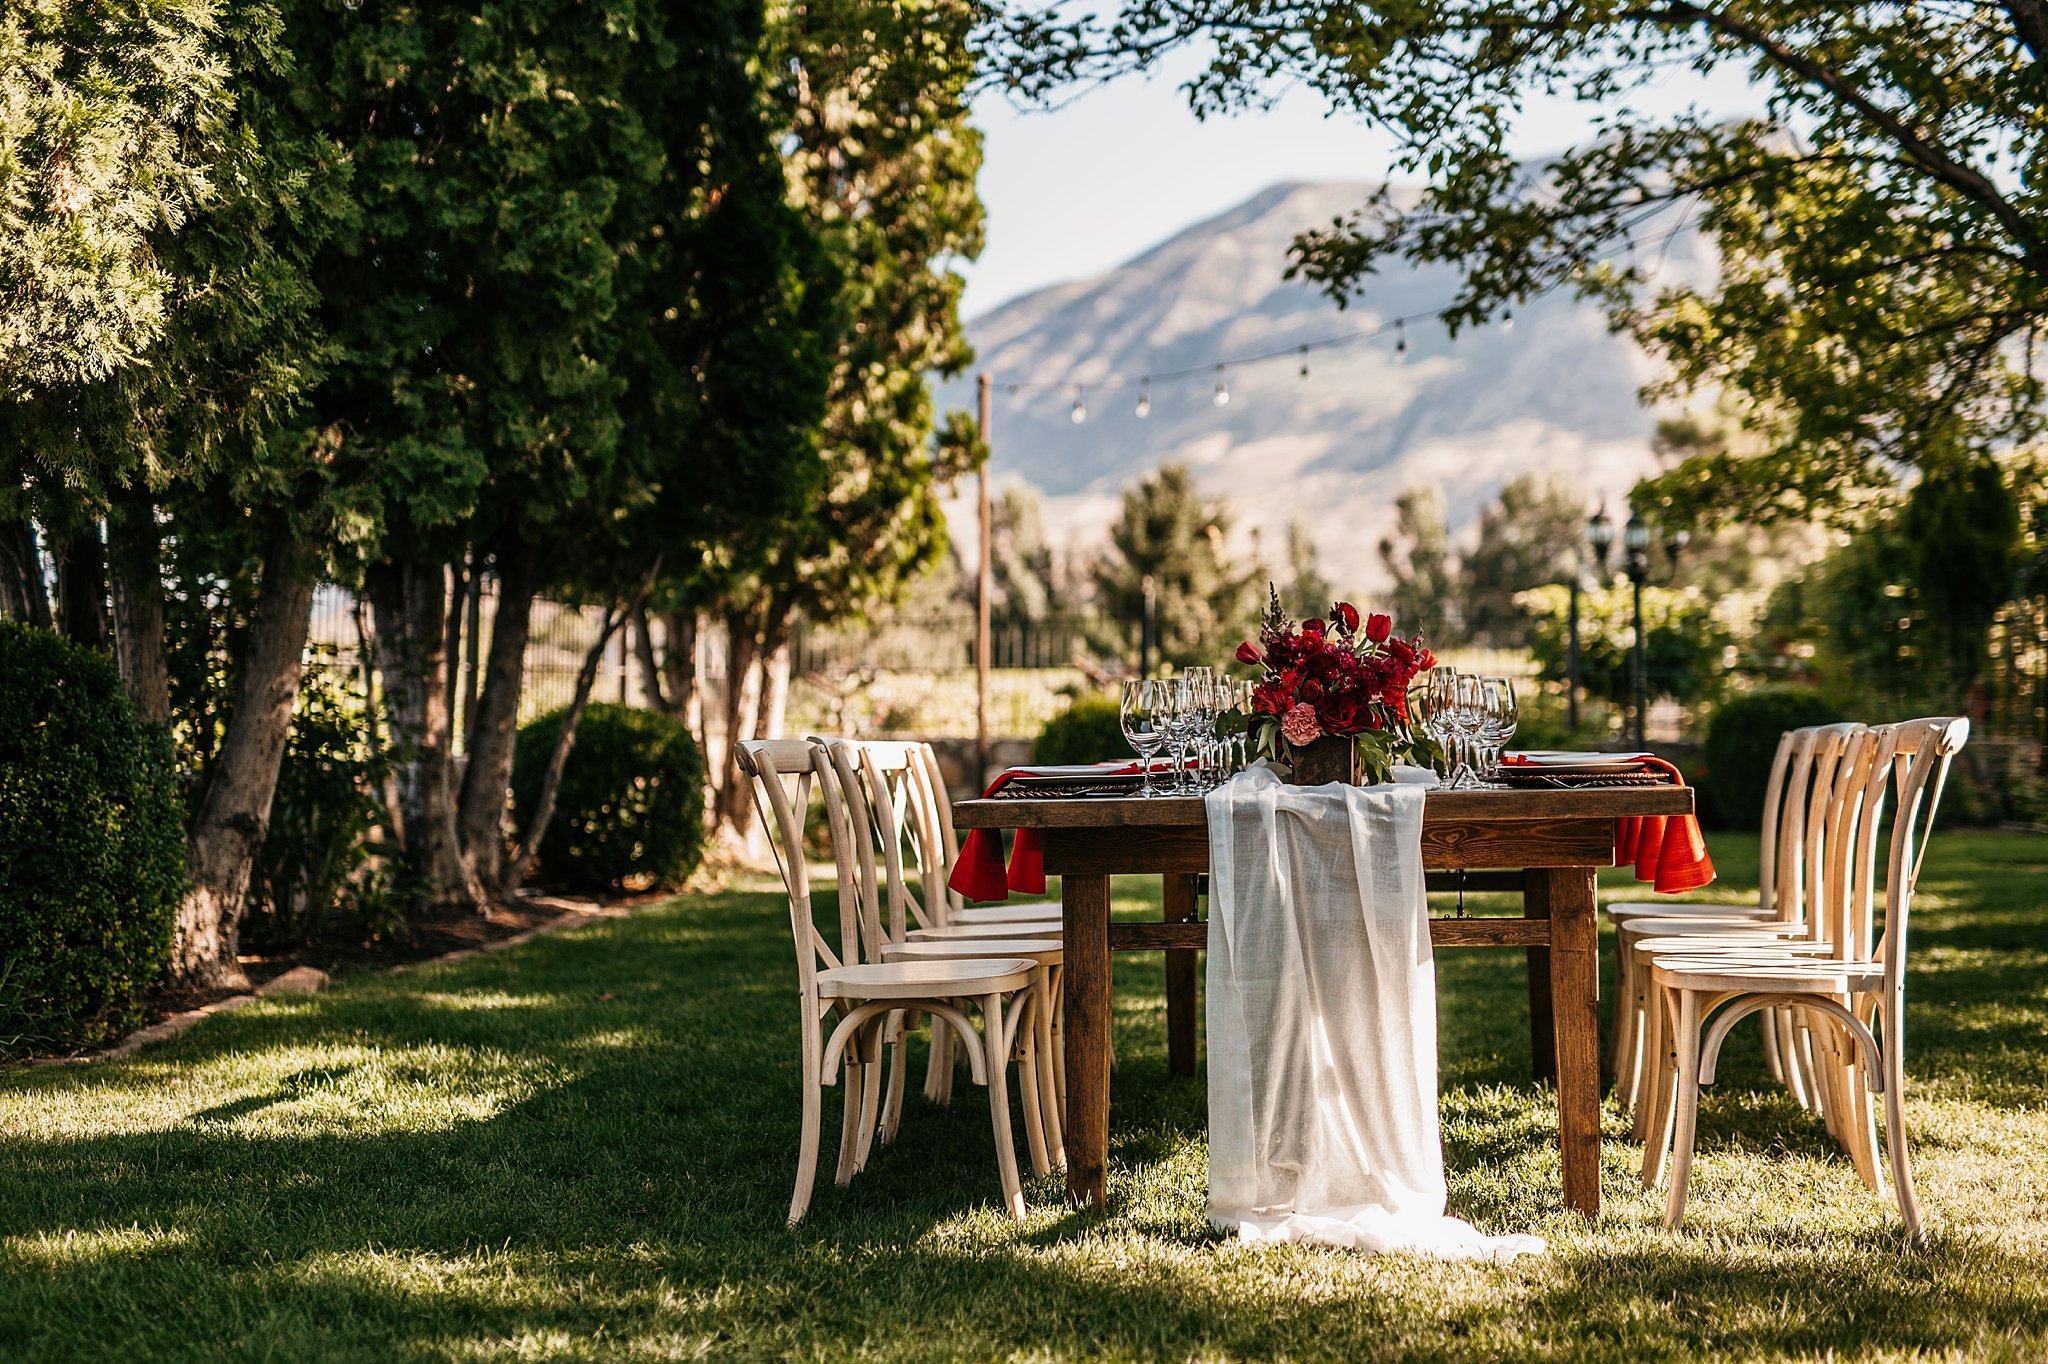 Outdoor wedding reception